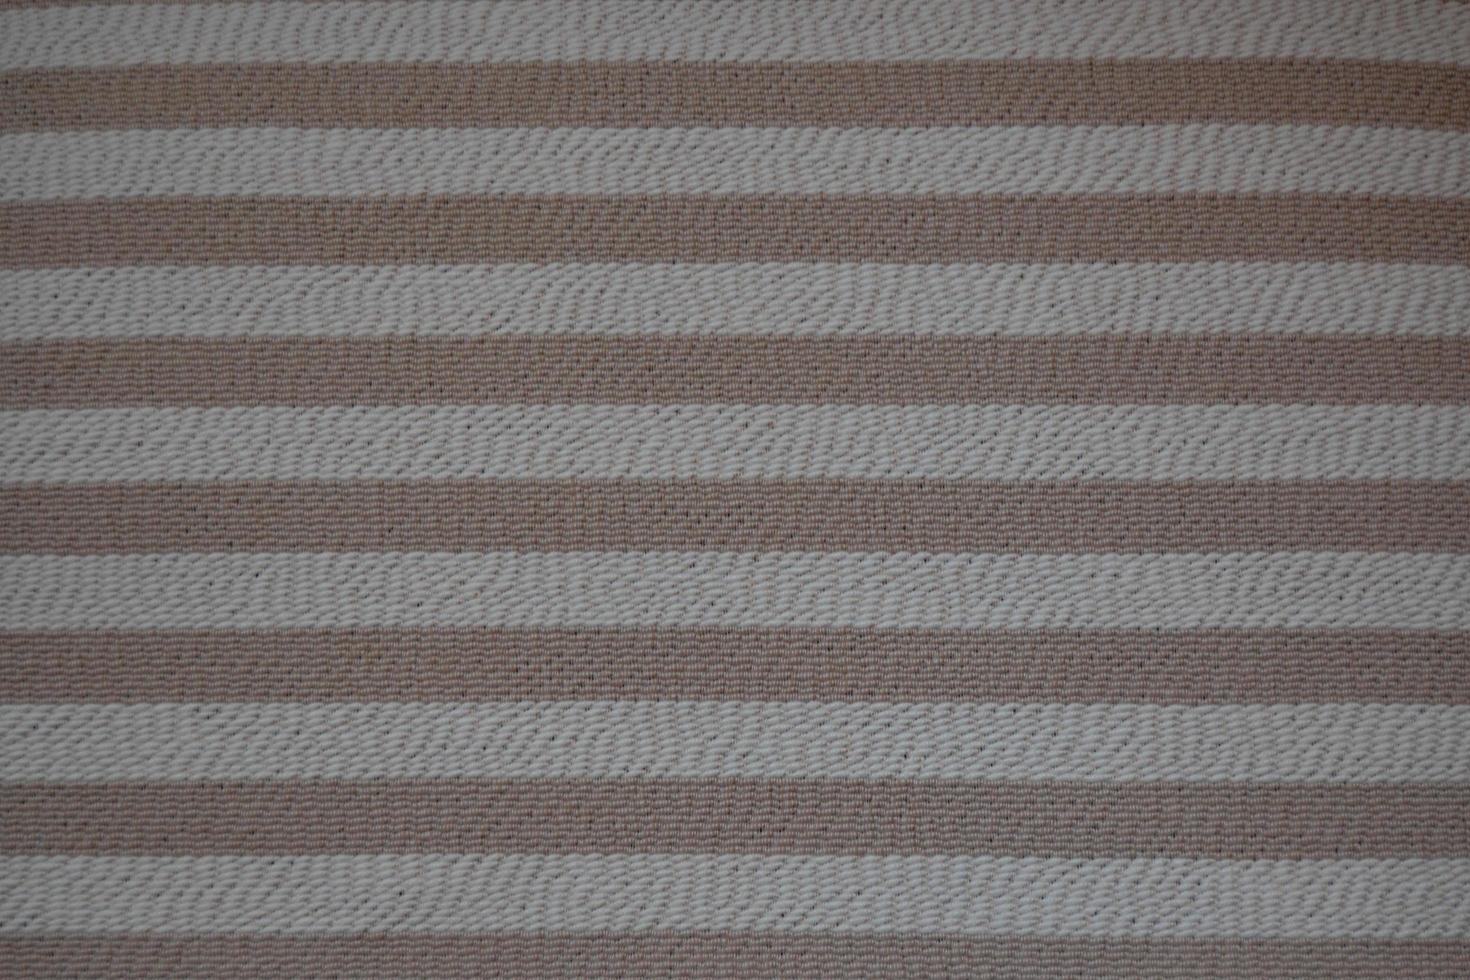 ruwe textuurachtergrond in beige en vuilwit, gemaakt met horizontale strepen in bruine tinten foto